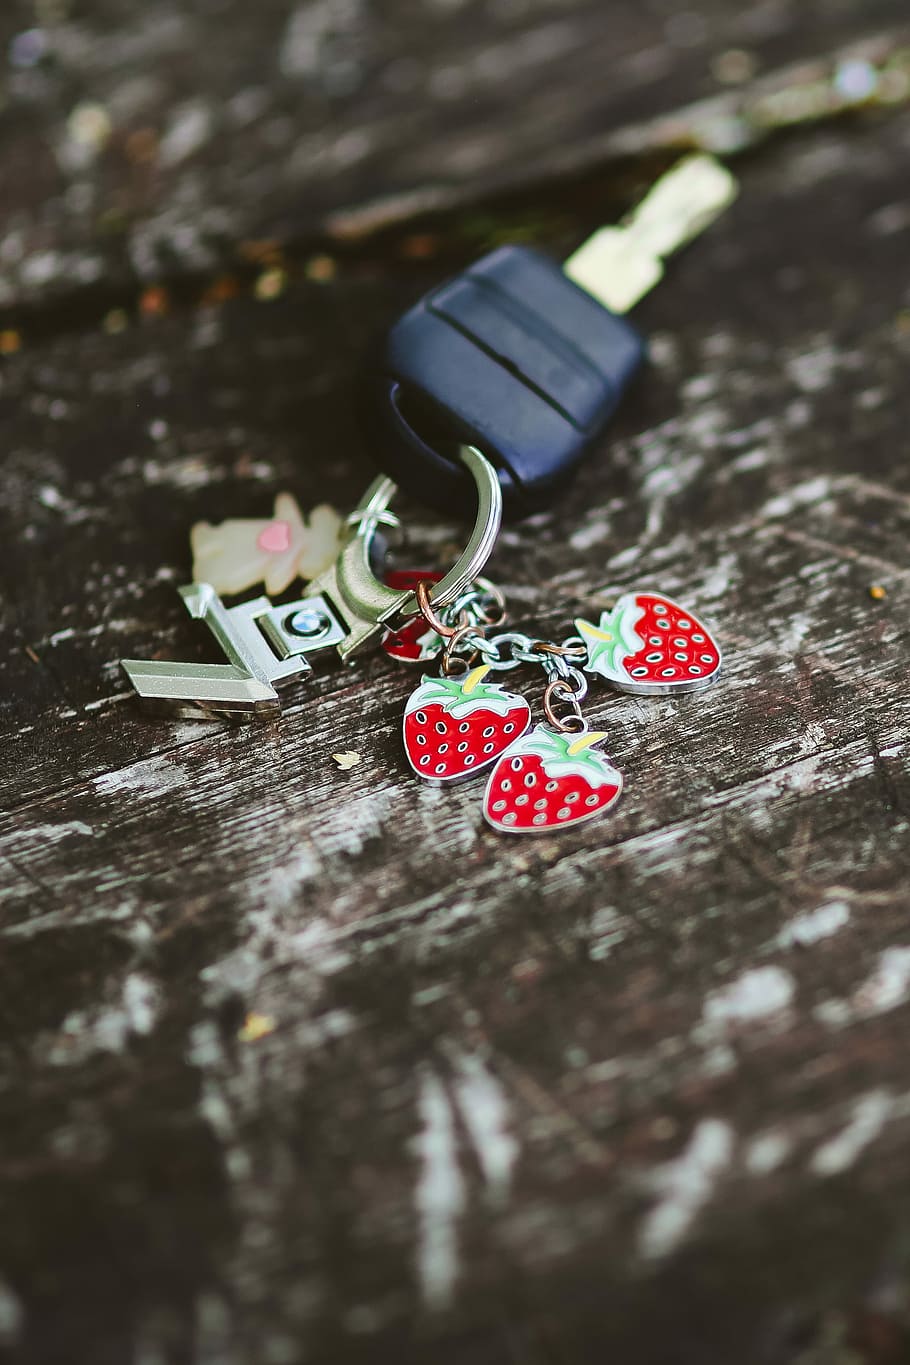 kunci, cincin, stroberi, gantungan kunci, kayu, kunci mobil, kayu - Bahan, merah, bentuk hati, cinta